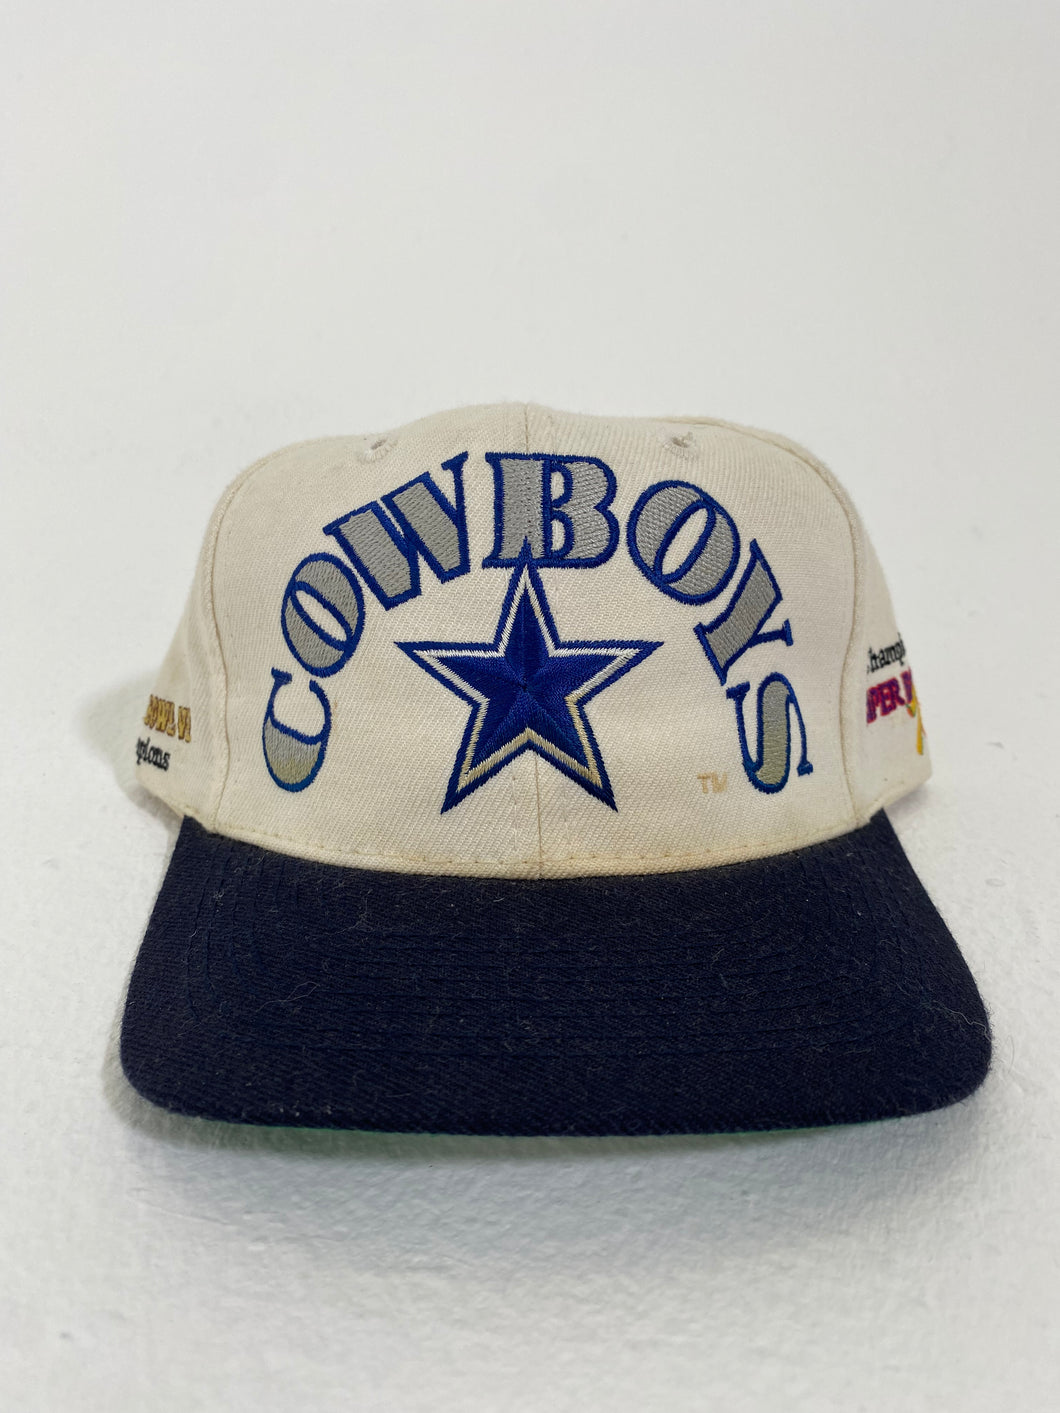 Vintage 1990's Dallas Cowboys ANNCO 